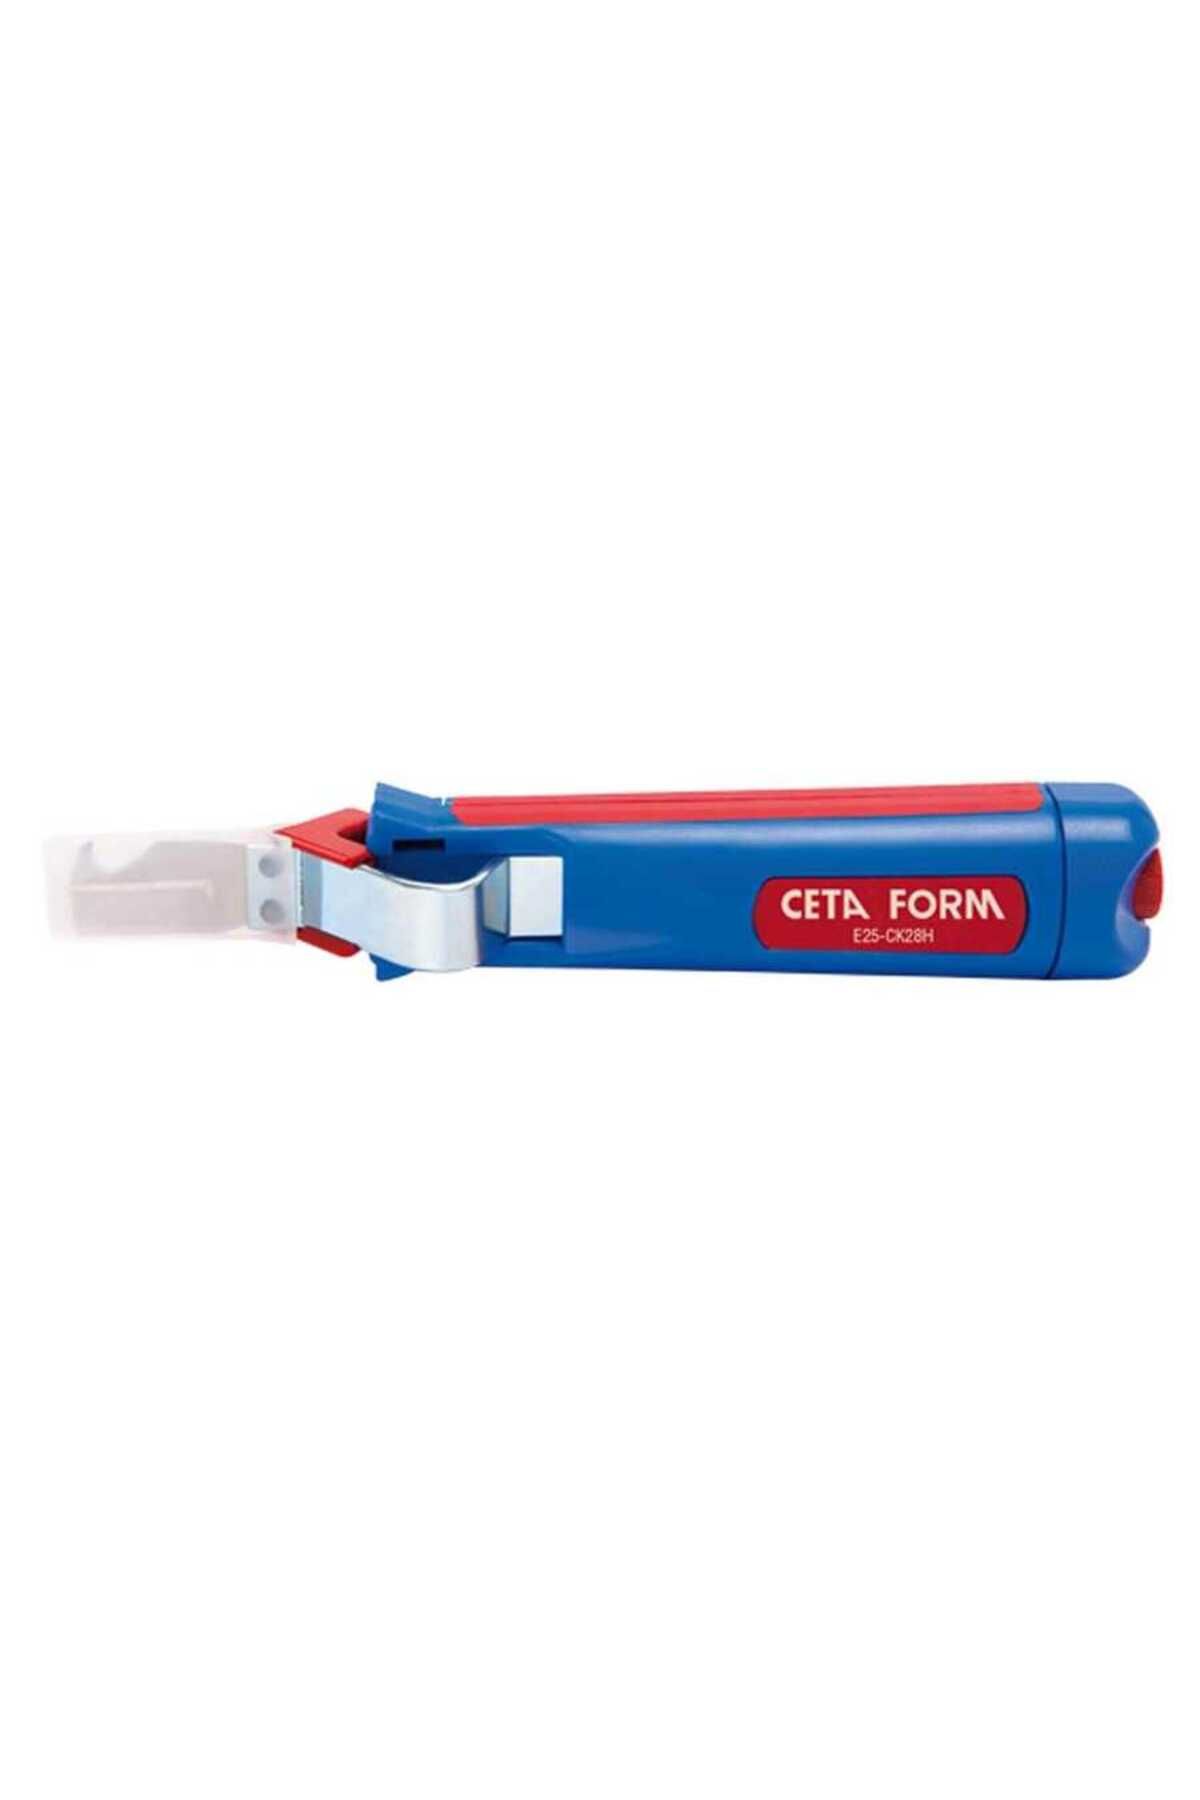 CETA FORM E25-ck28h Kablo Soyma Bıçağı